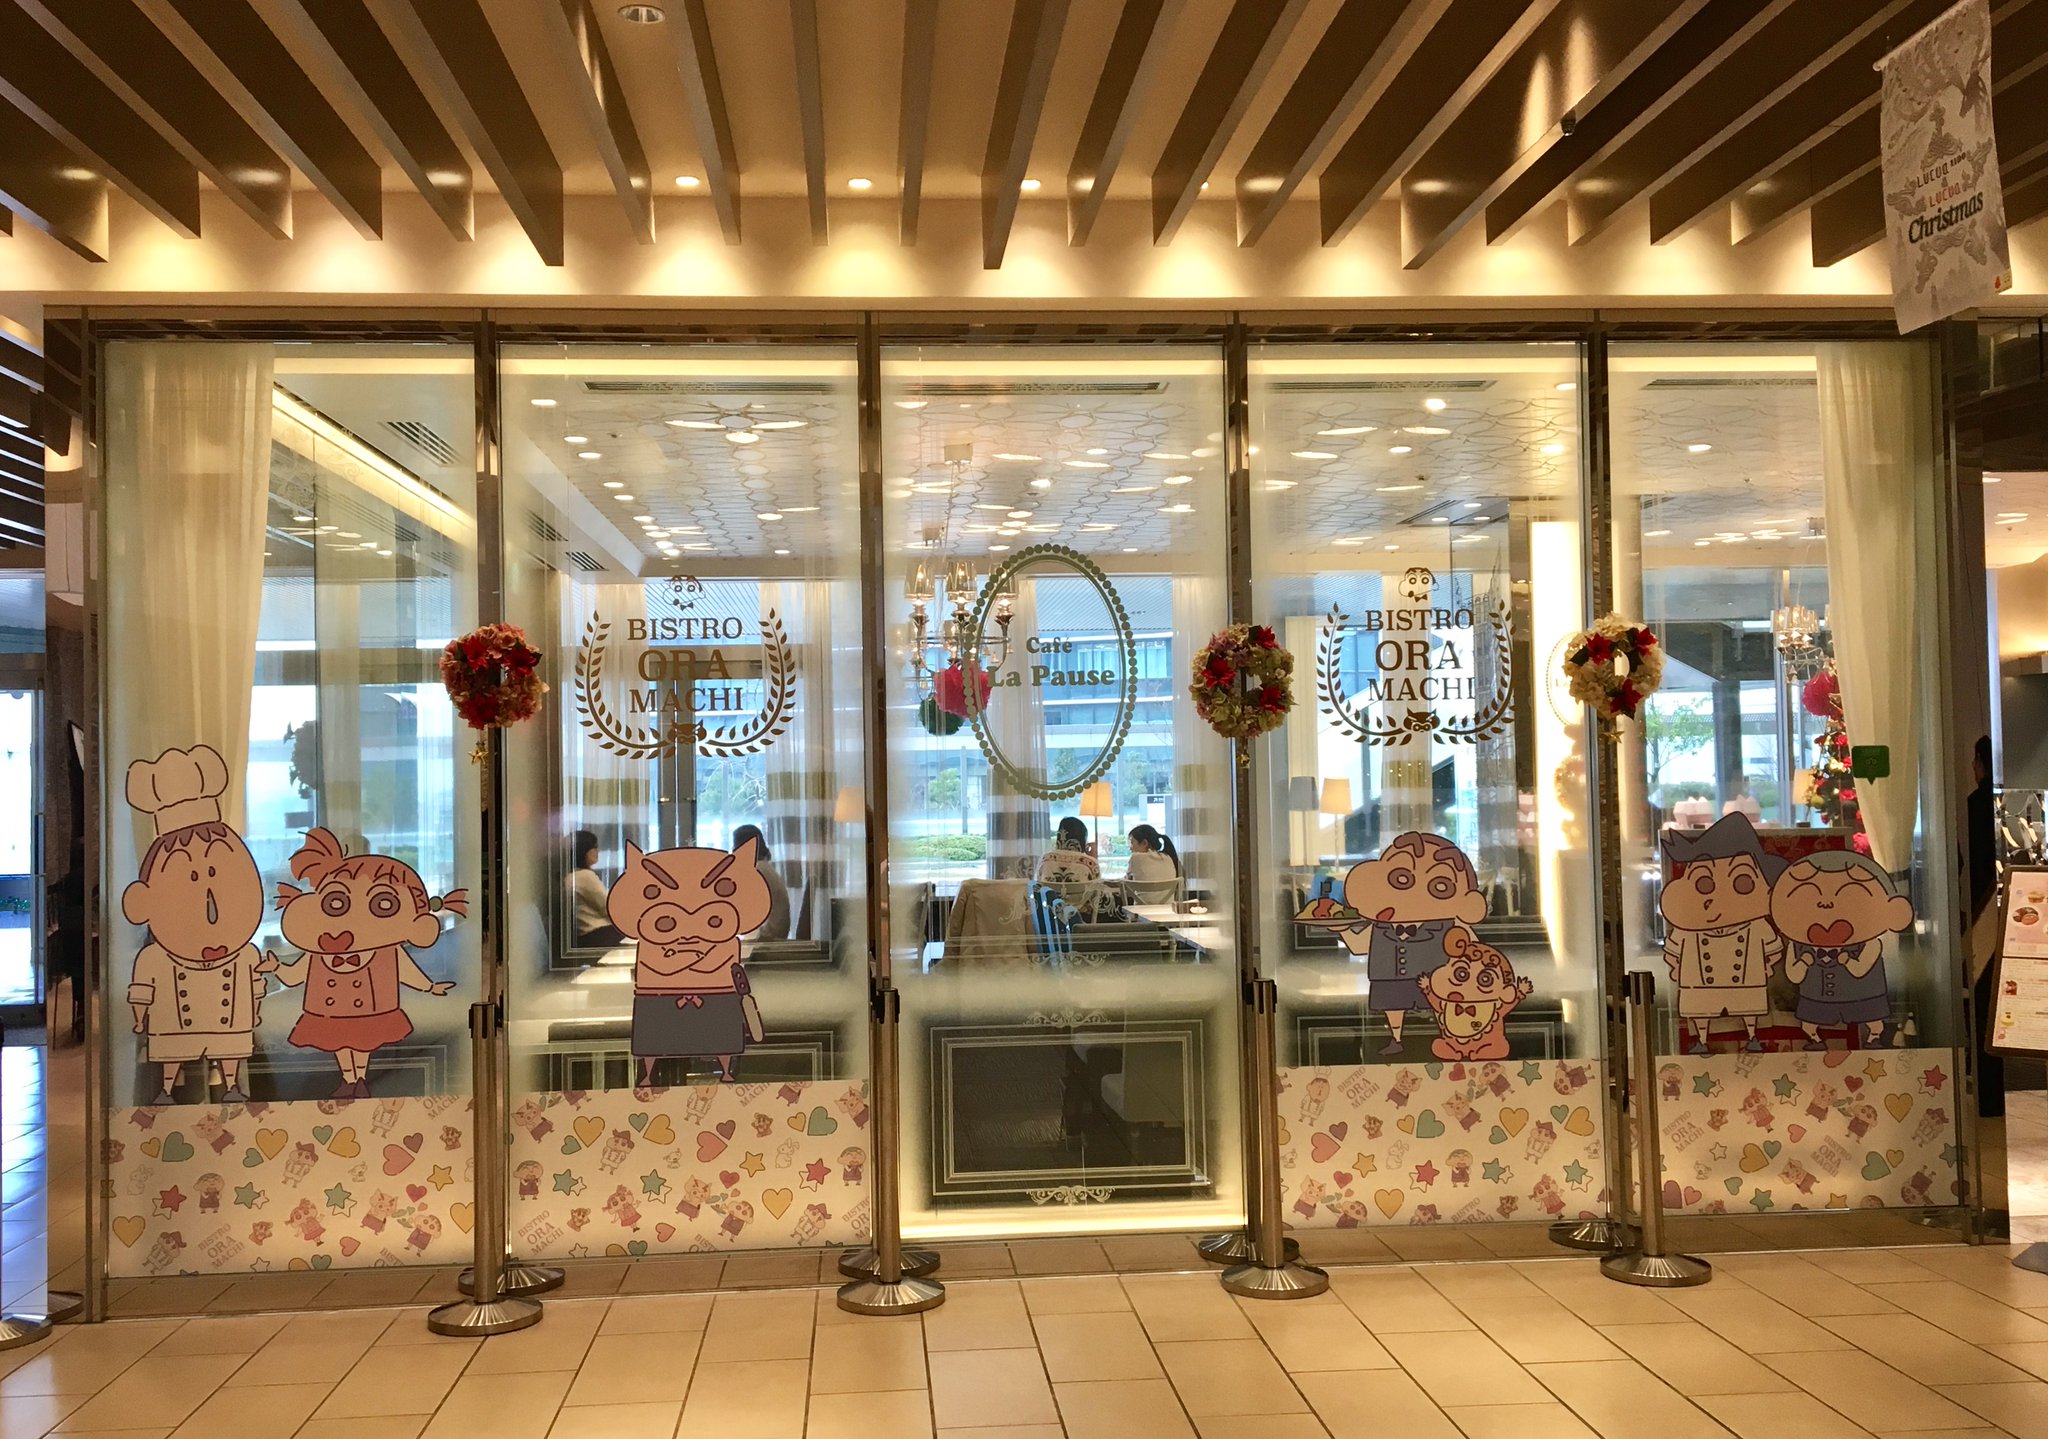 クレヨンしんちゃんカフェ ビストロ オラマチ in 大阪 がルクアイーレにオープン jの時間